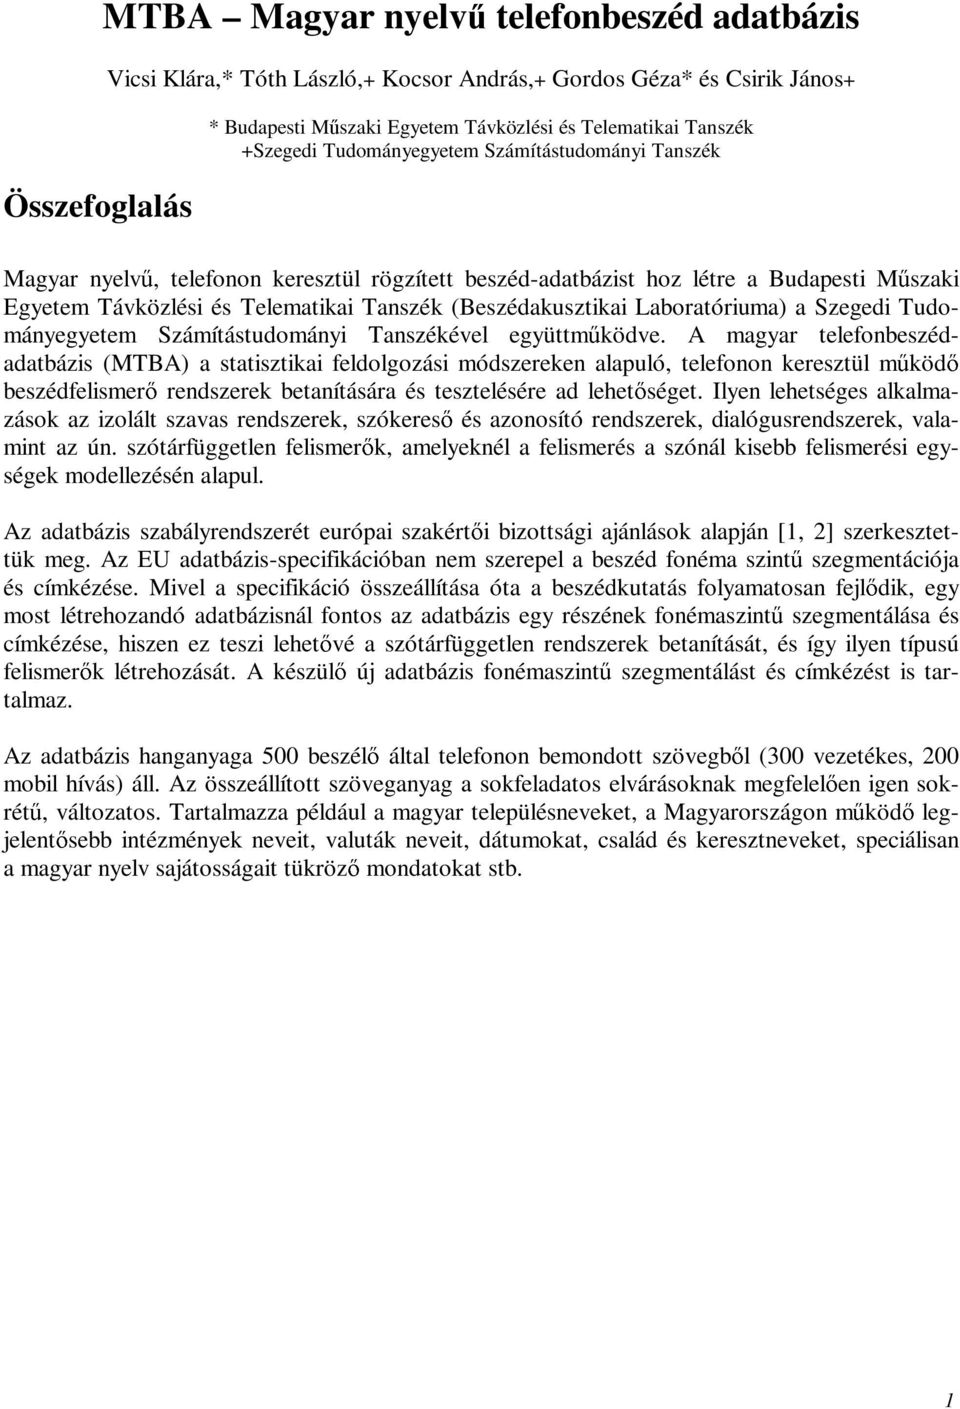 (Beszédakusztikai Laboratóriuma) a Szegedi Tudományegyetem Számítástudományi Tanszékével együttműködve.